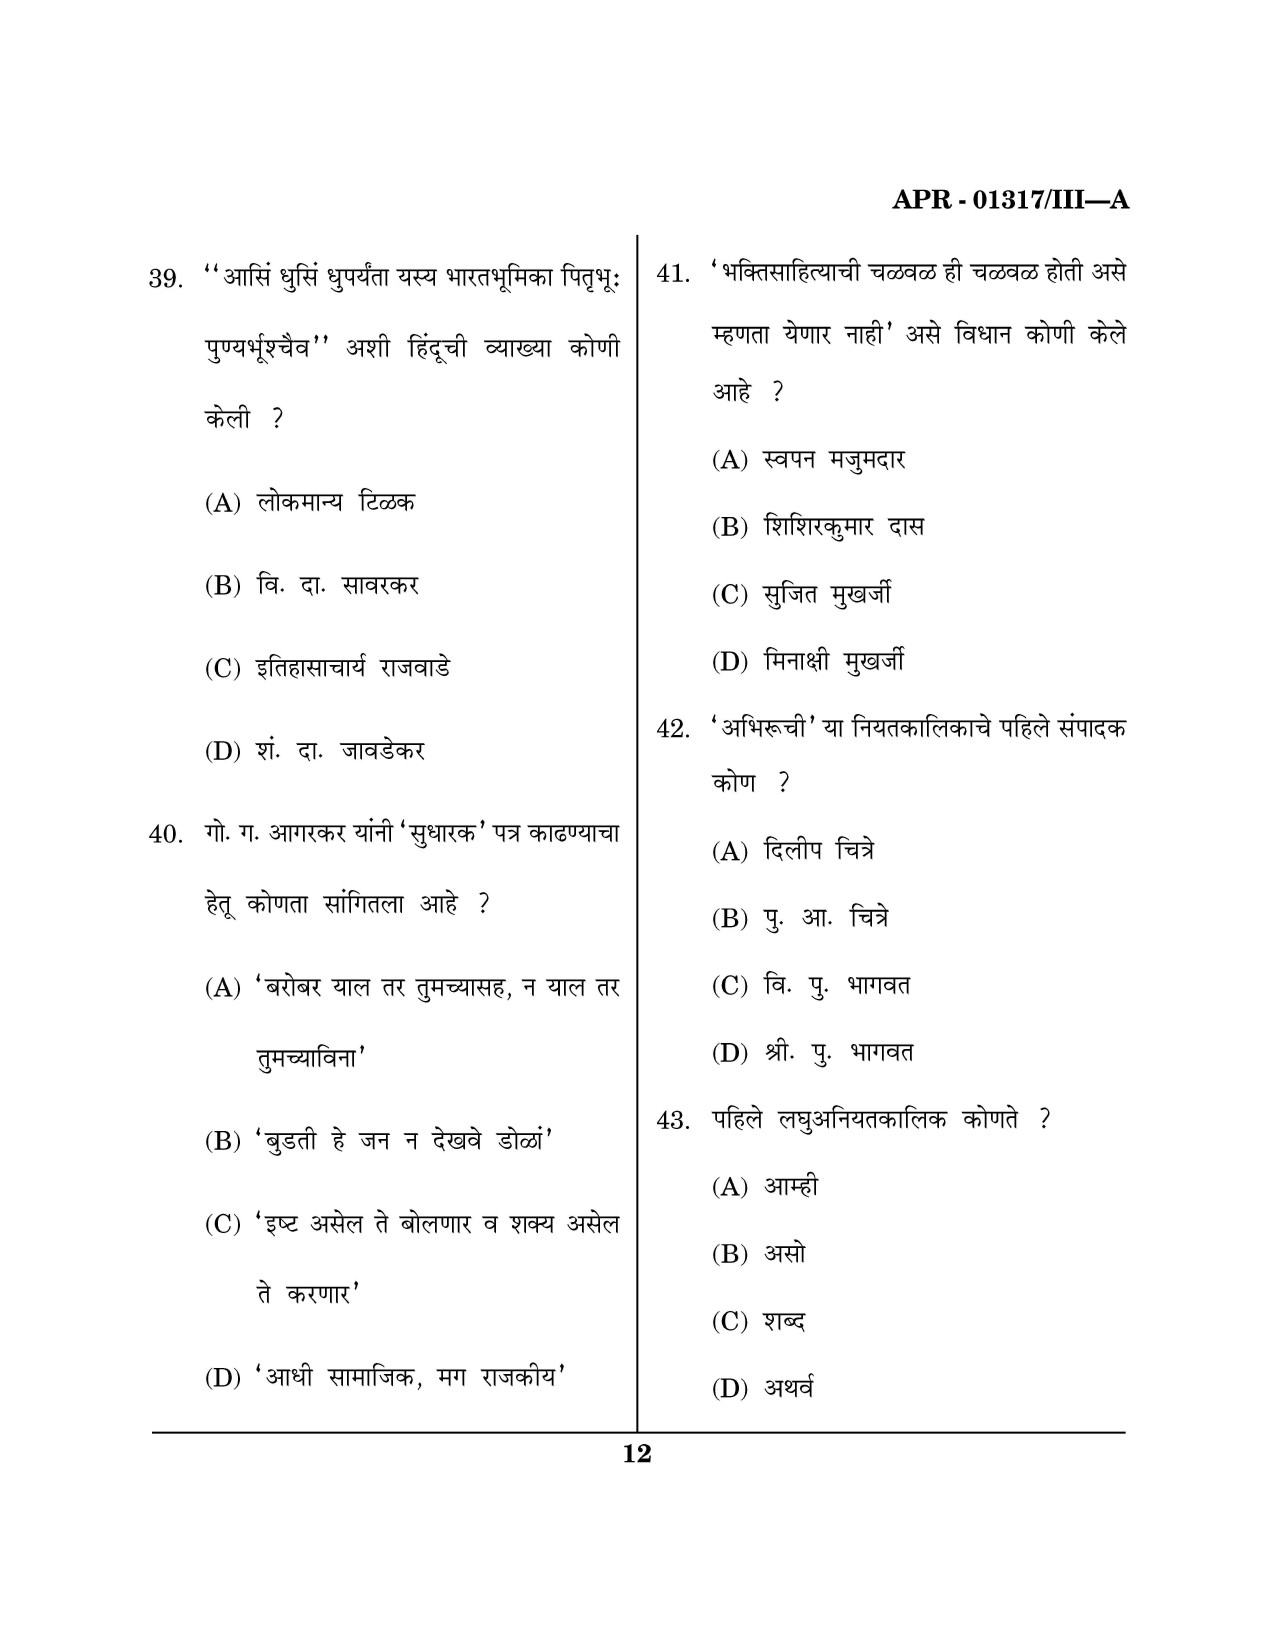 Maharashtra SET Marathi Question Paper III April 2017 11